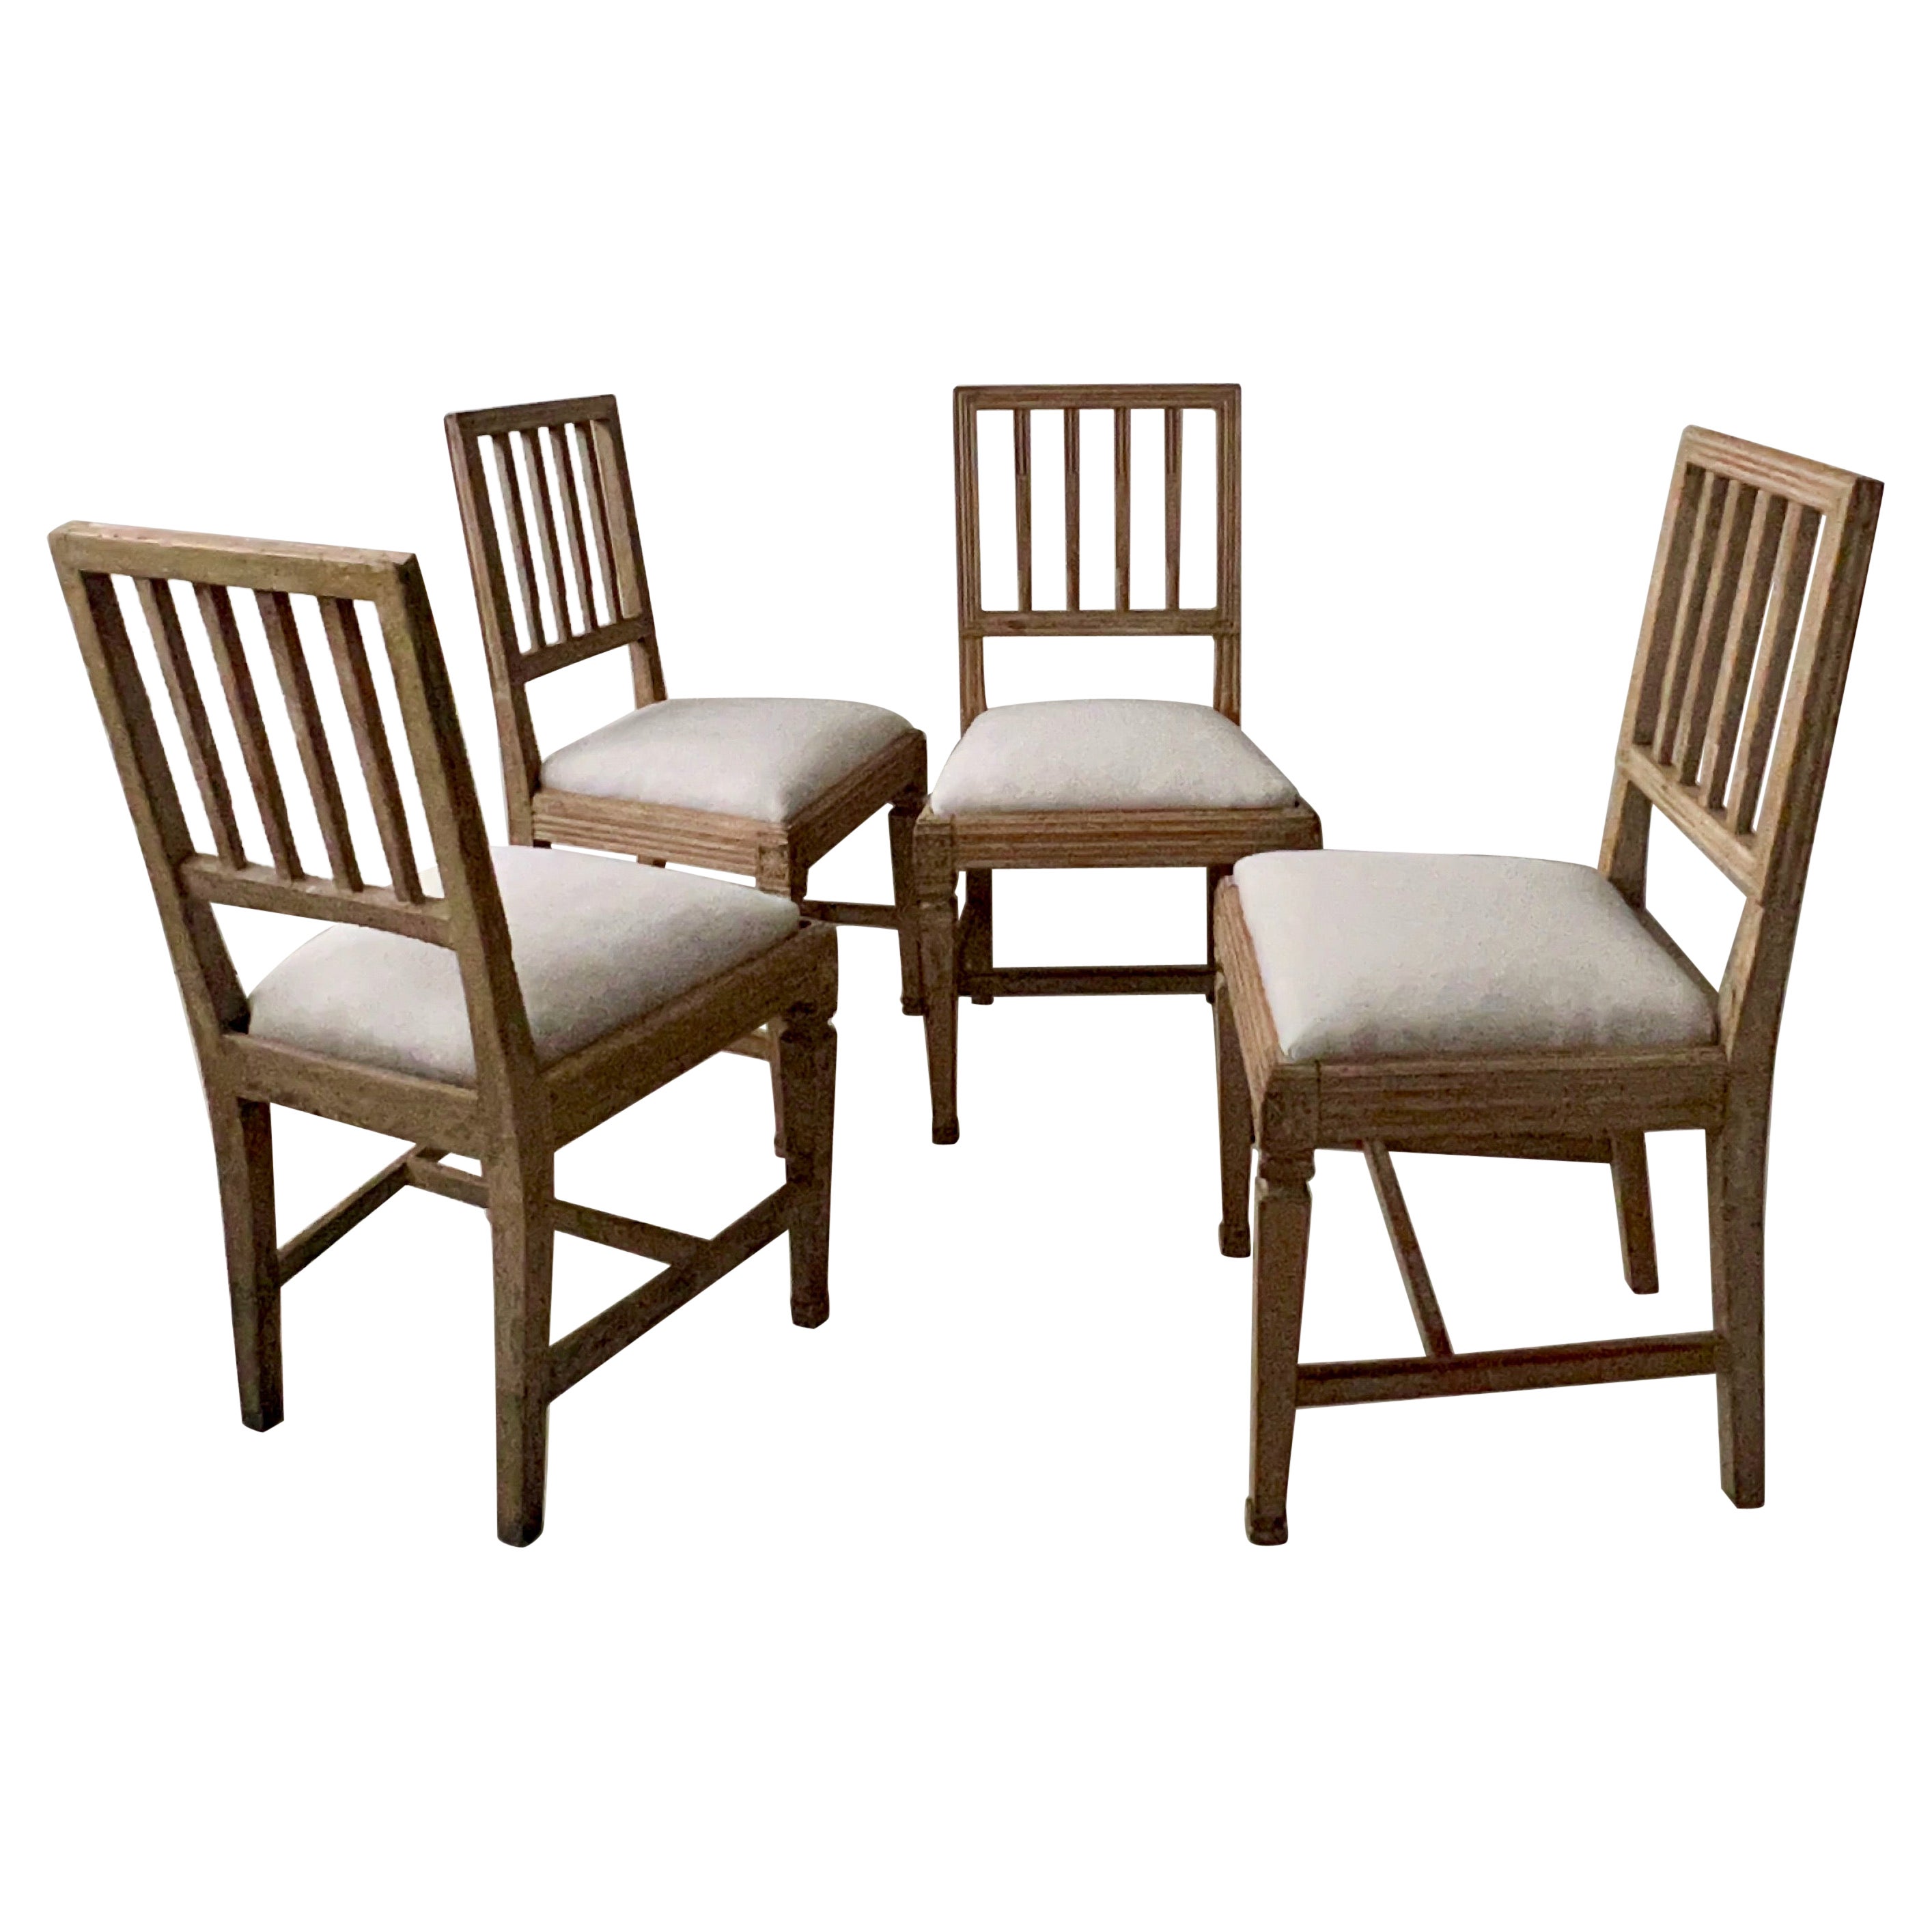 Ensemble de quatre chaises d'époque gustavienne du XVIIIe siècle